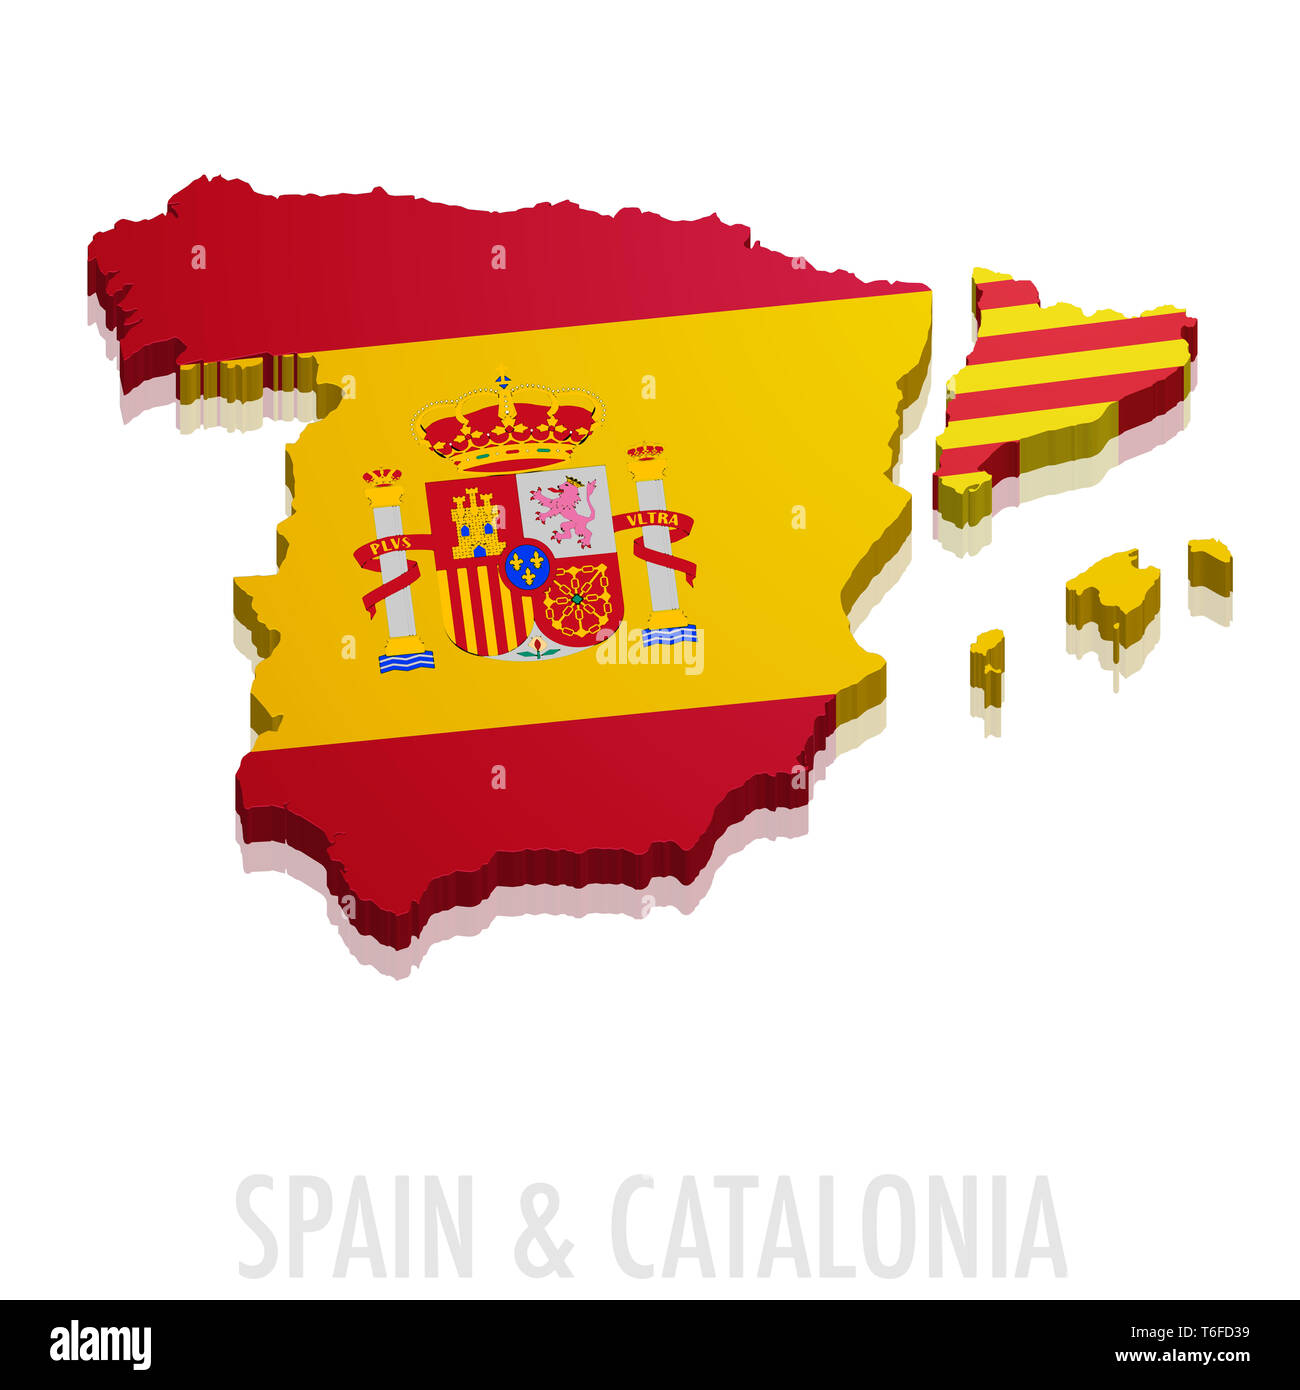 Map Spain Catalonia Stock Photo